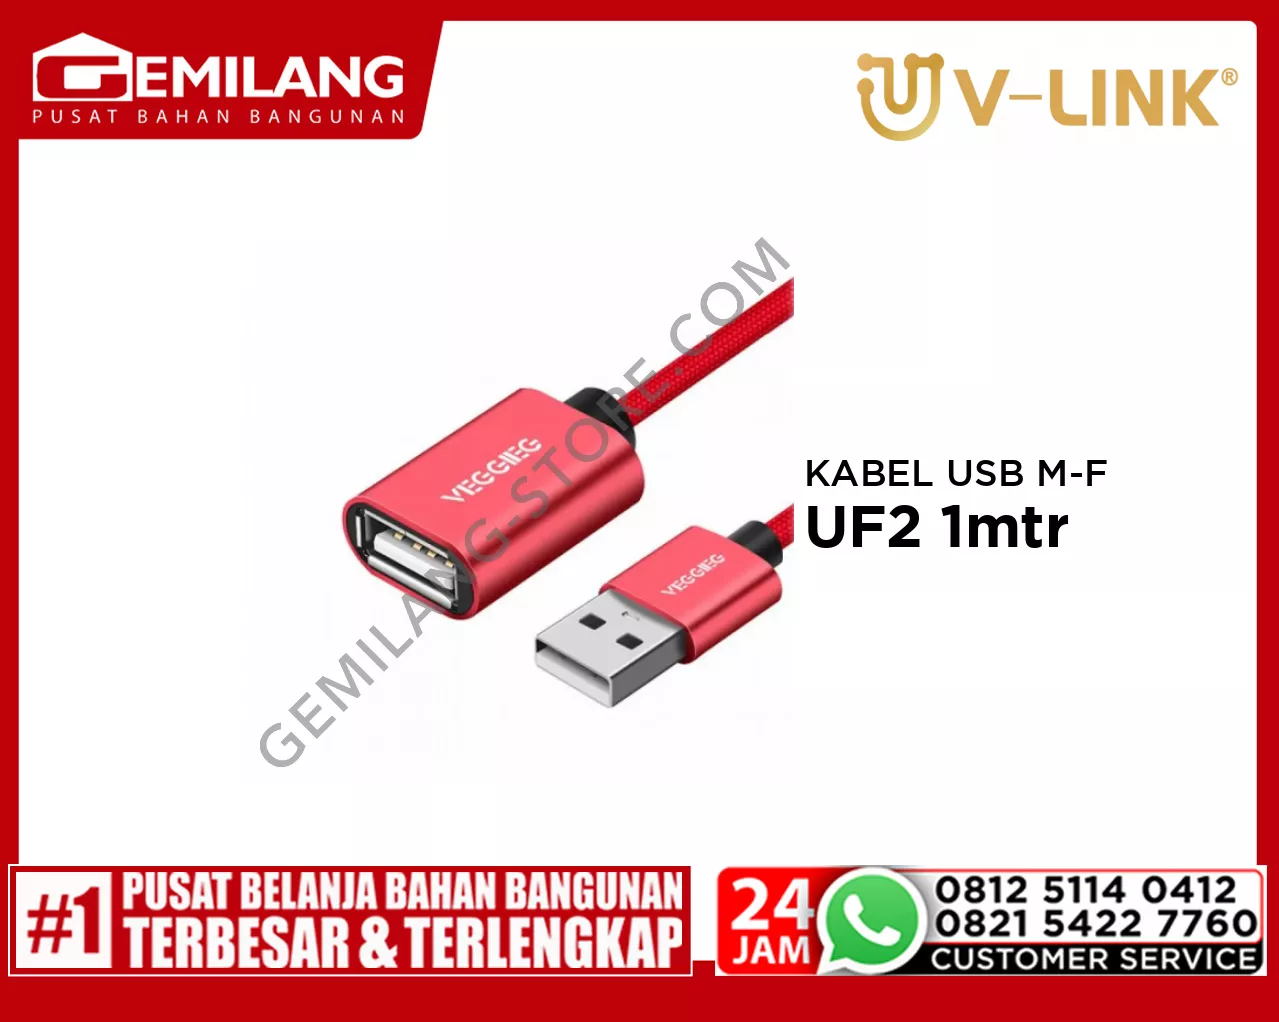 V-LINK KABEL USB MALE TO FEMALE VEGGIEG UF2 1mtr